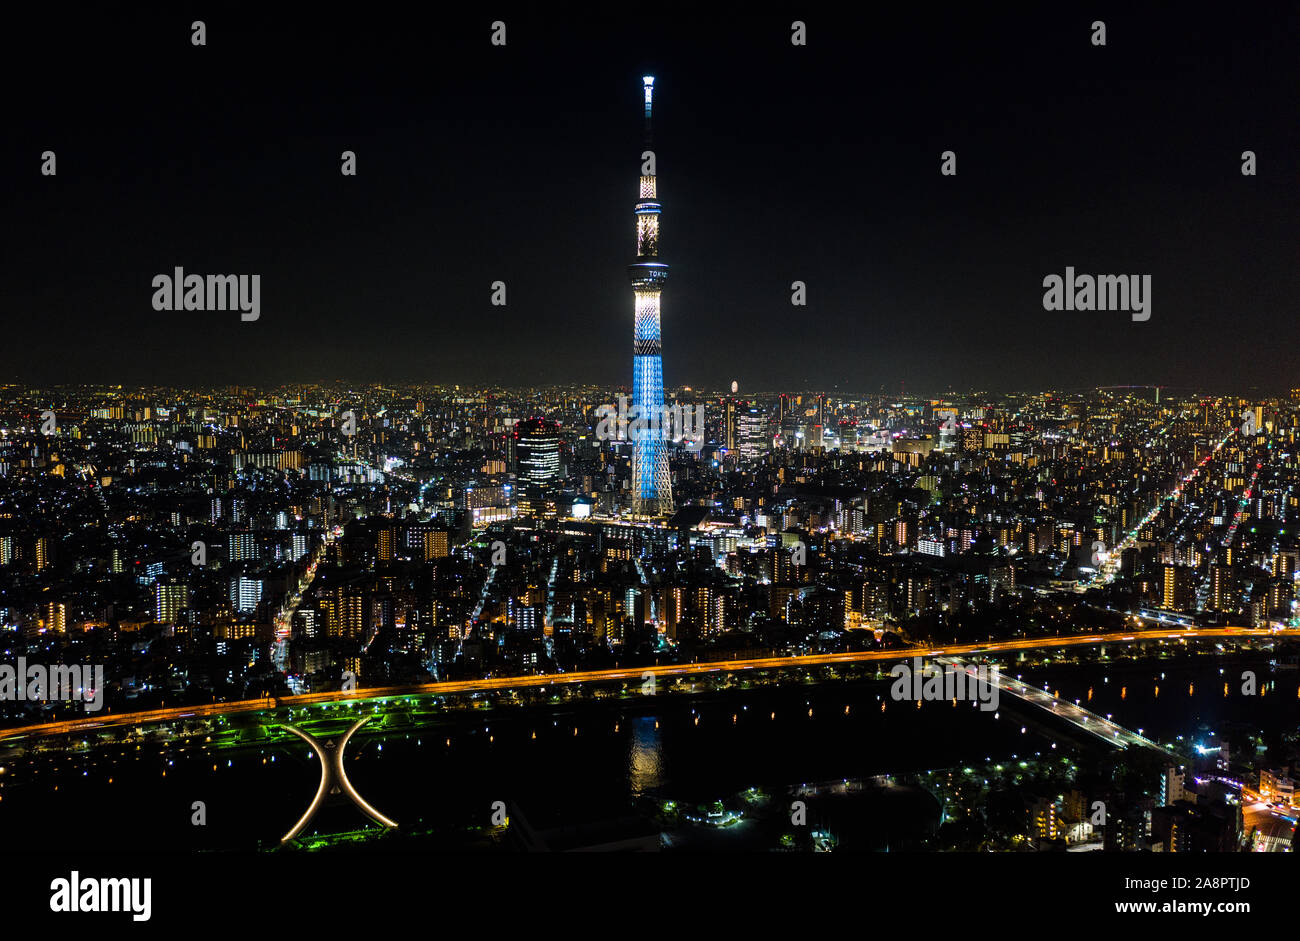 Luftaufnahme von Tokio Skytree und Sumida River, und Japanische Landschaft in Tokyo City bei Nacht. Japan Tourismus, Stadtbild, Asien Reiseziel Sehenswürdigkeit Stockfoto